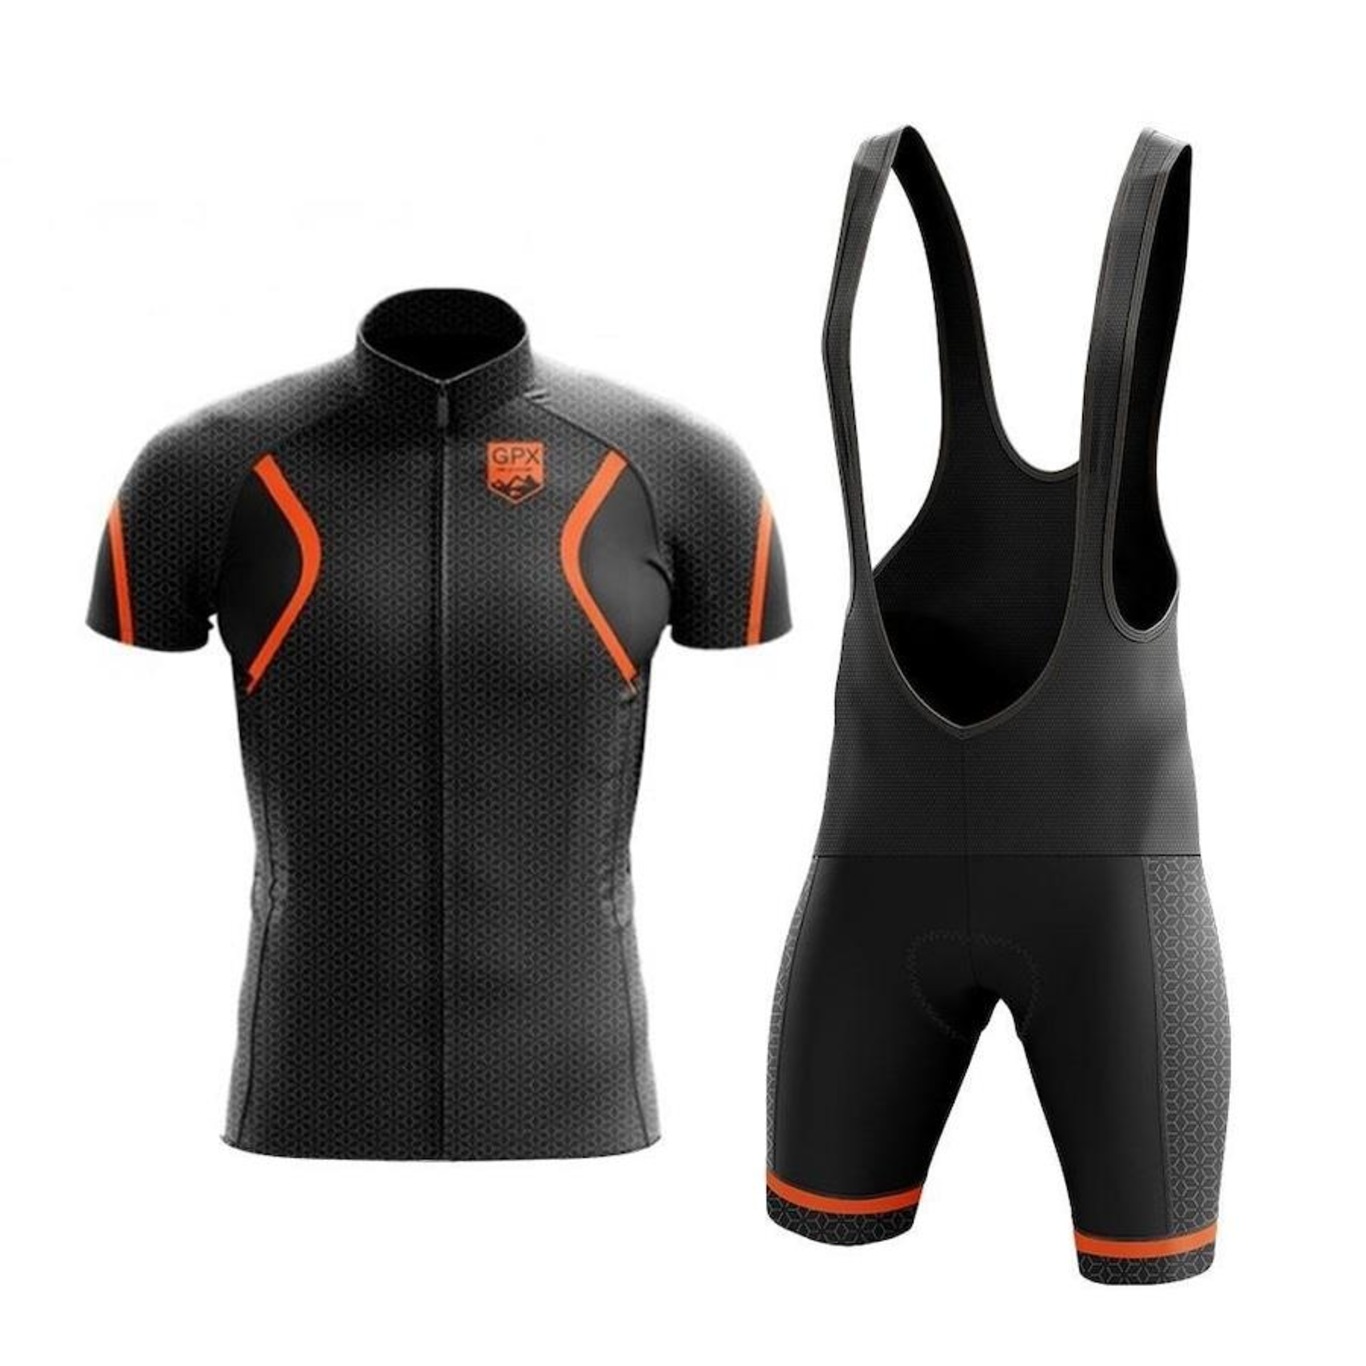 Conjunto GPX de Ciclismo: Bretelle + Camisa Zíper Full Hunter Masculino - Foto 1